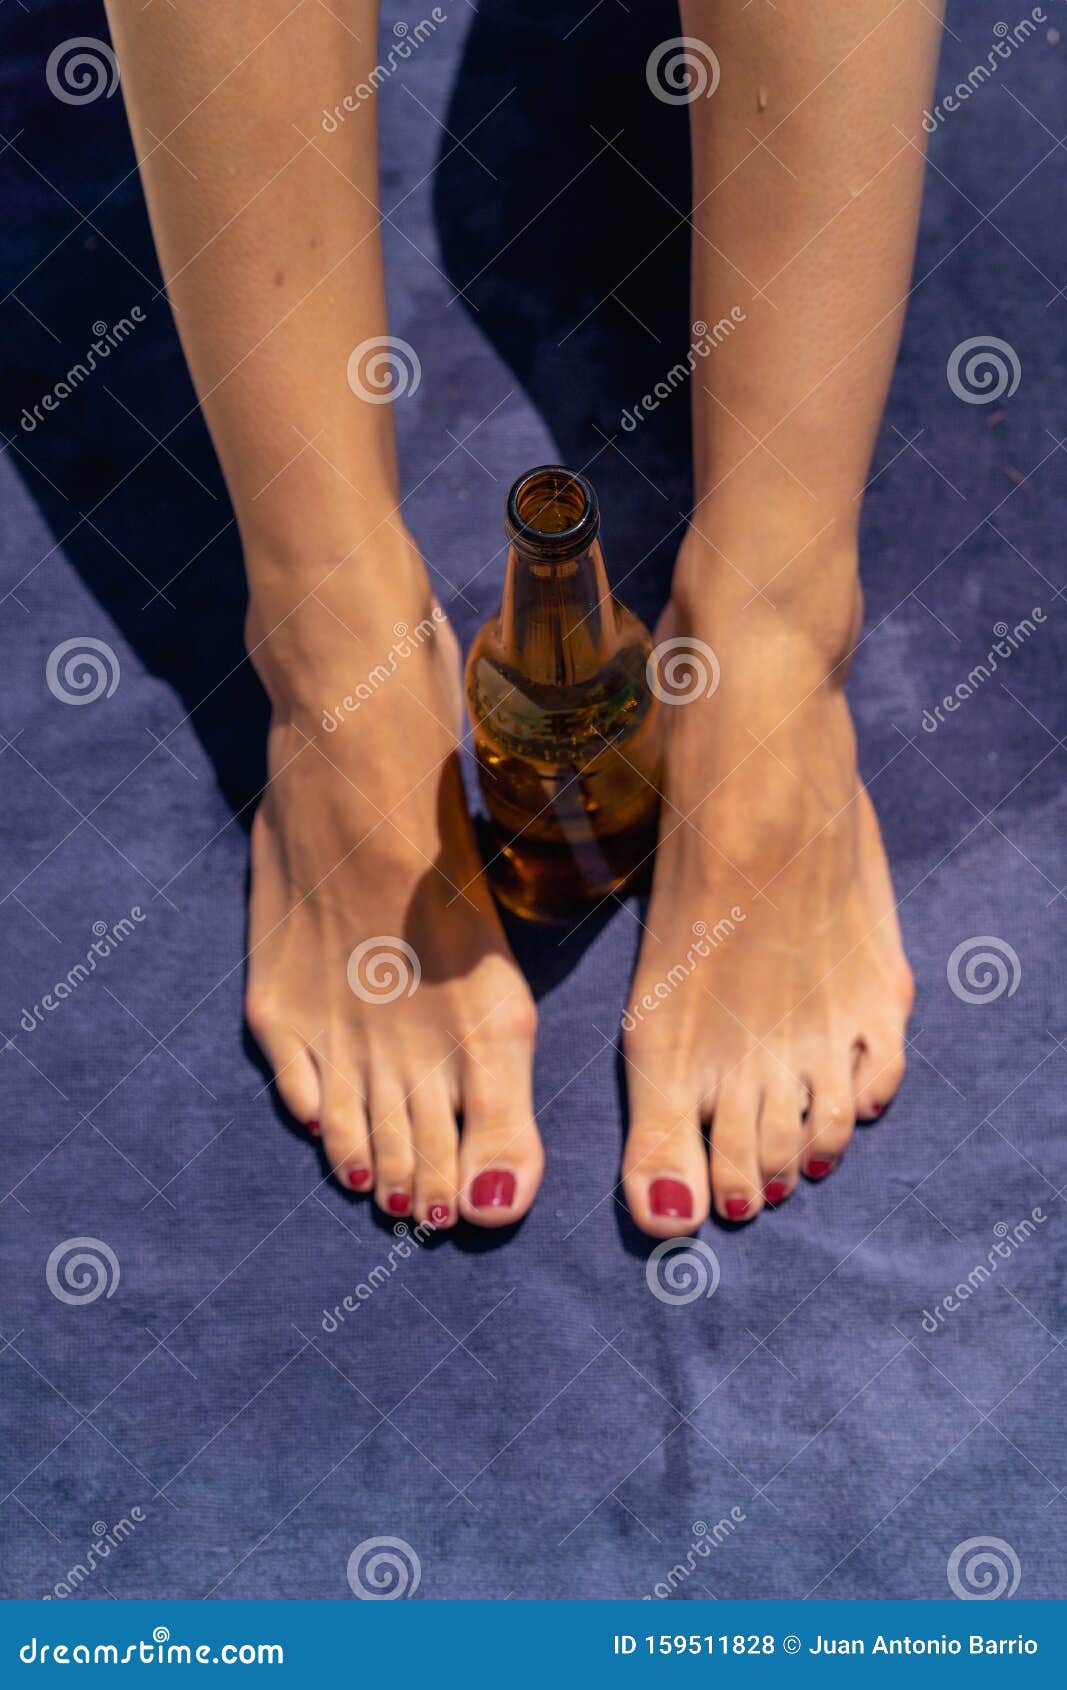 crisis gids Muf Jonge Vrouw En X27 Voet Op Een Handdoek Met Bier Stock Foto - Image of  sensueel, gezond: 159511828